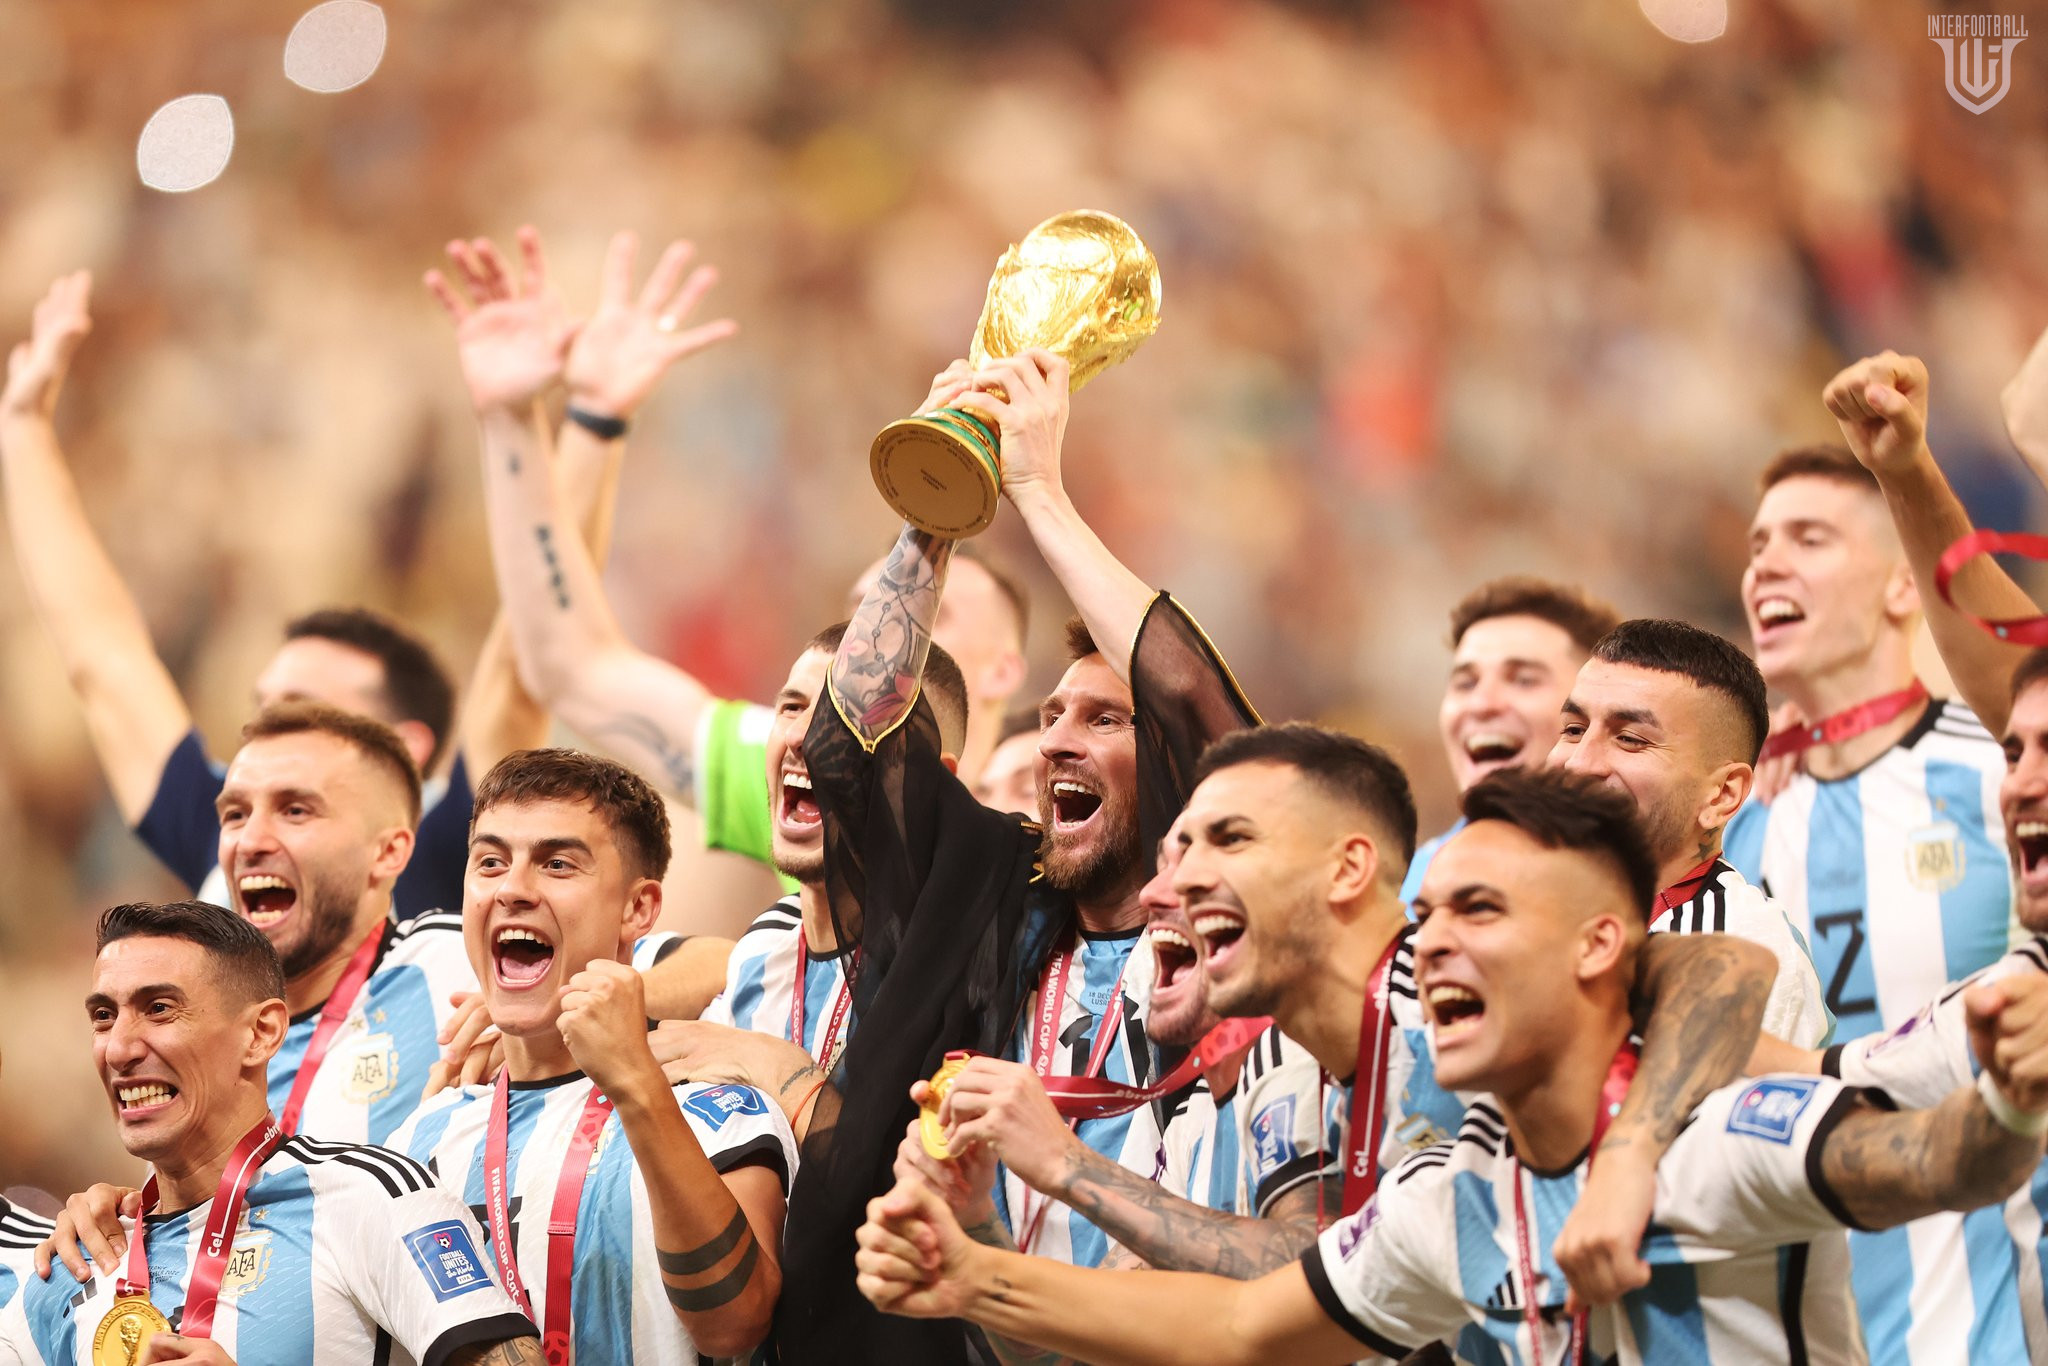 Interfootball-ի հարցմանը մասնակցածների 60%-ը կարծում է, որ ԱԱ-2022-ը  պատմության լավագույն  աշխարհի առաջնությունն էր